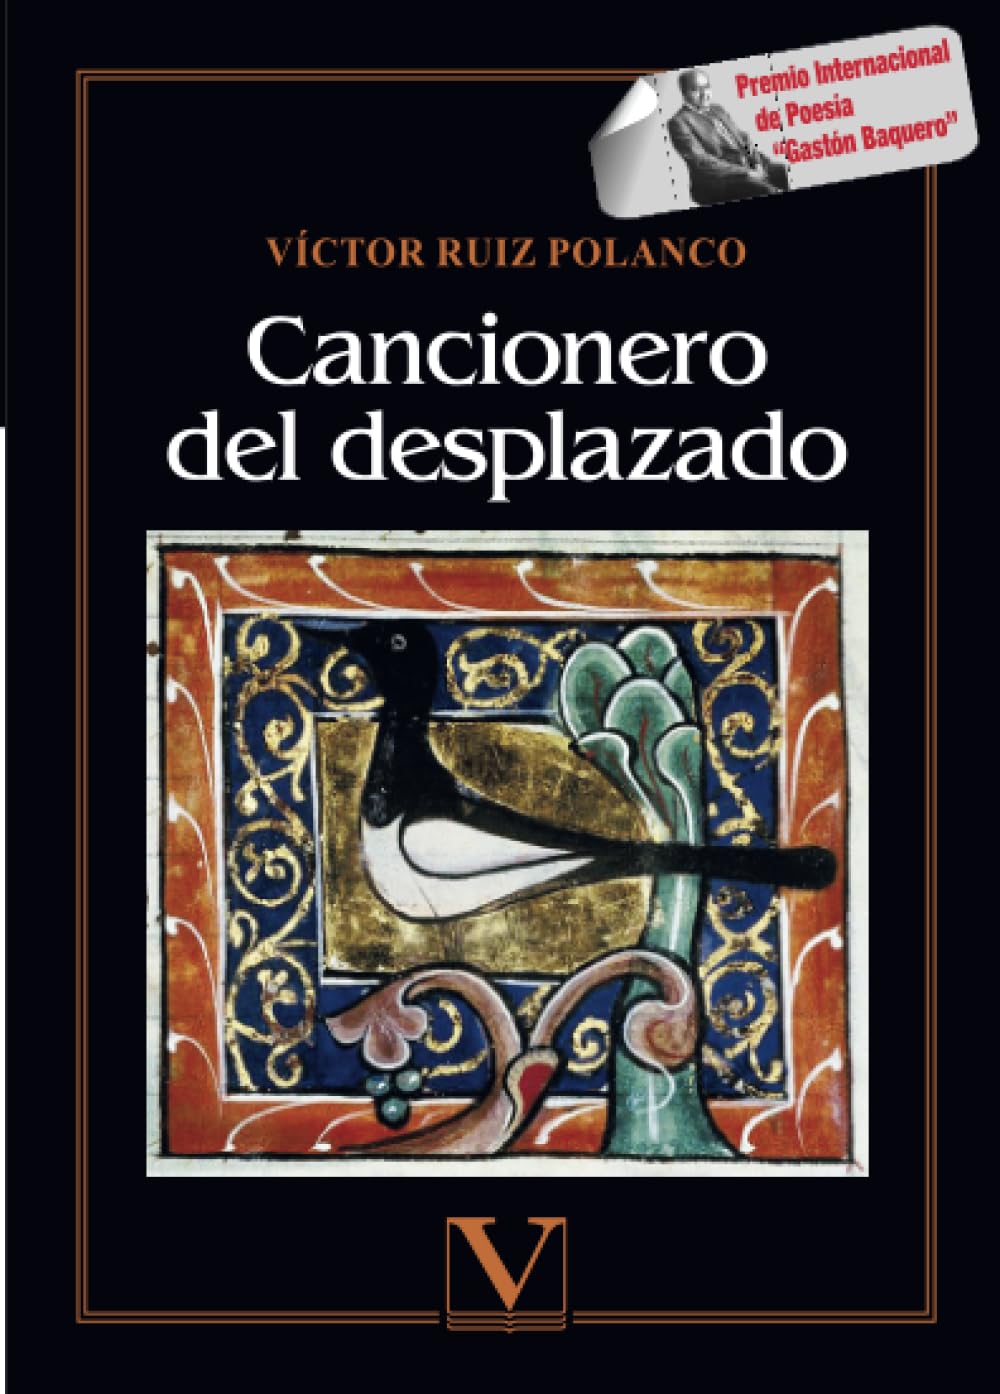 5 poemas (y 3 haikus) de Víctor Ruiz Polanco